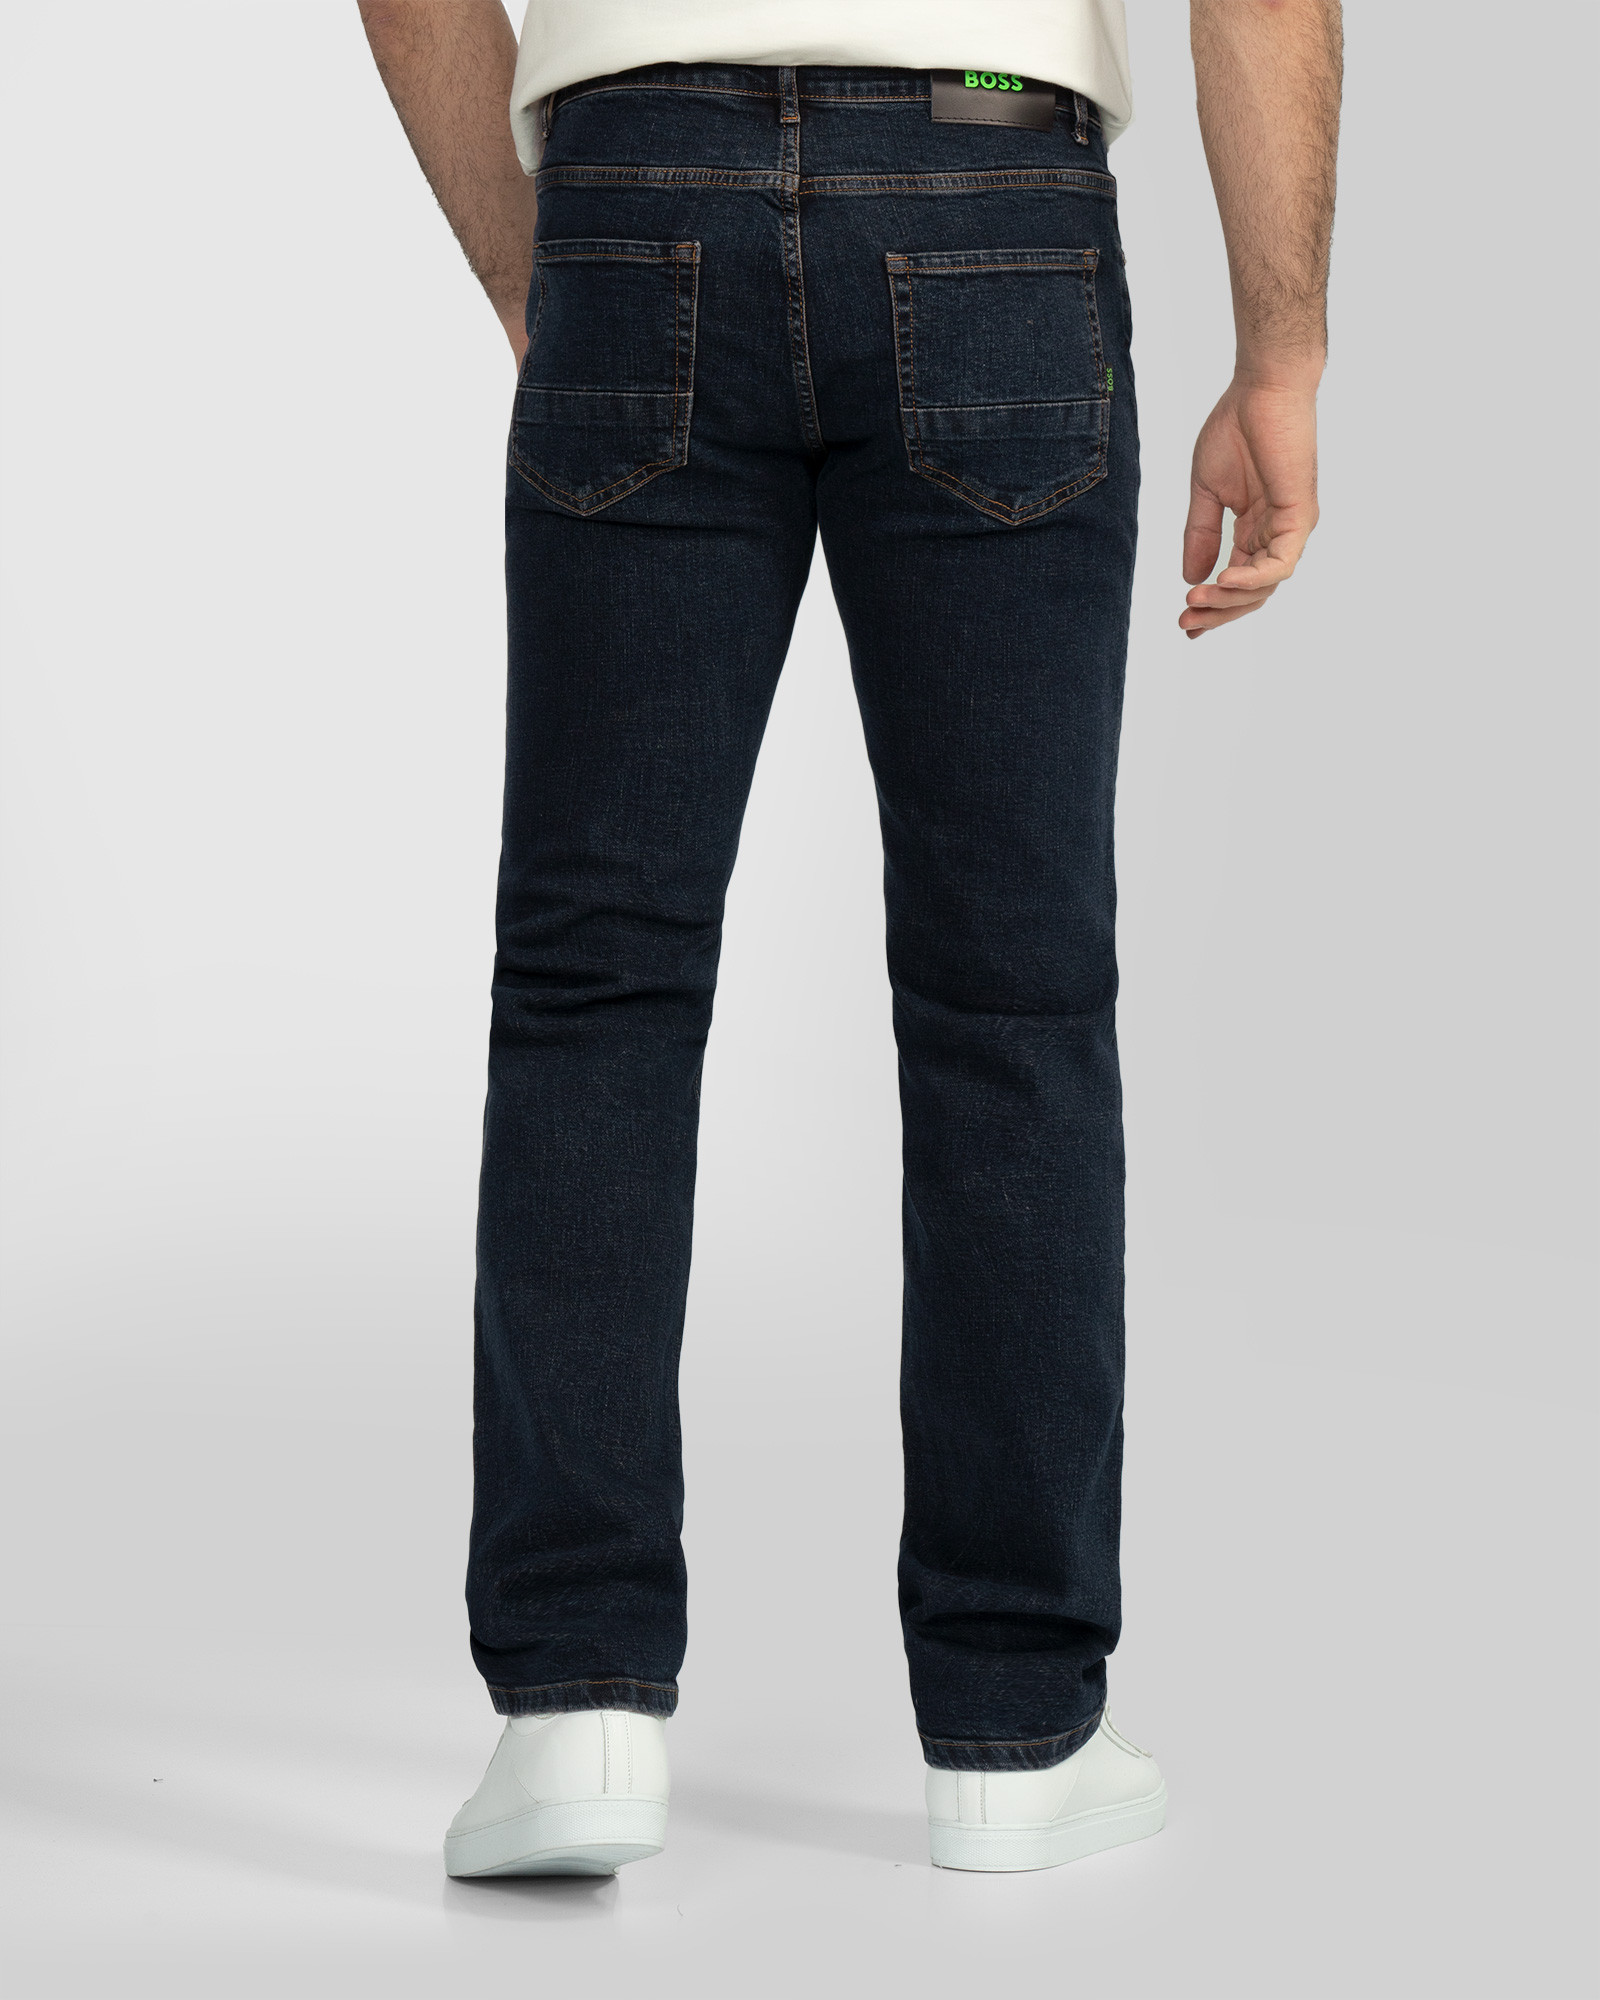 خرید شلوار جین مینی ساده مردانه سرمه ای تیره 22424627